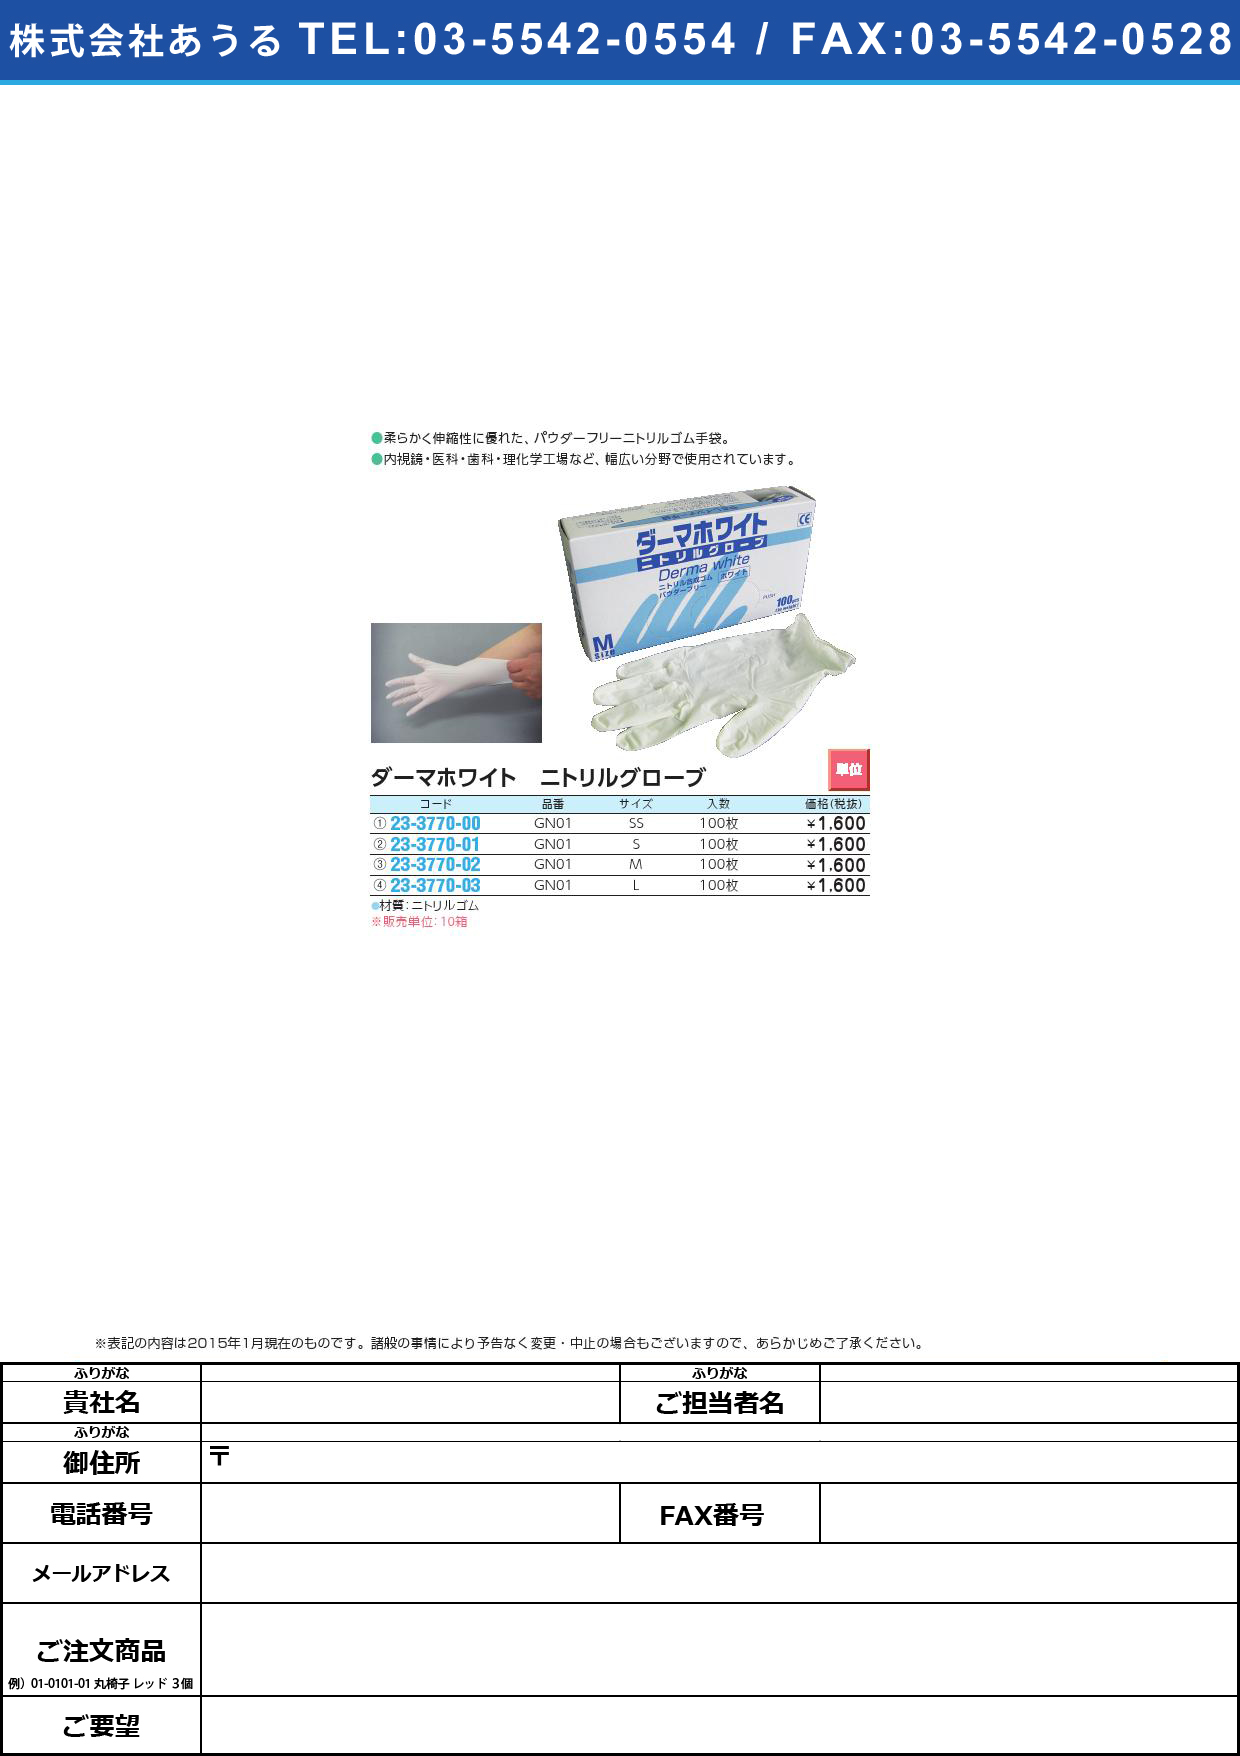 ダーマホワイト ニトリル手袋ＰＦ ﾀﾞｰﾏﾎﾜｲﾄﾆﾄﾘﾙﾃﾌﾞｸﾛPF GN01(L)100ﾏｲ【10箱単位】(23-3770-03)